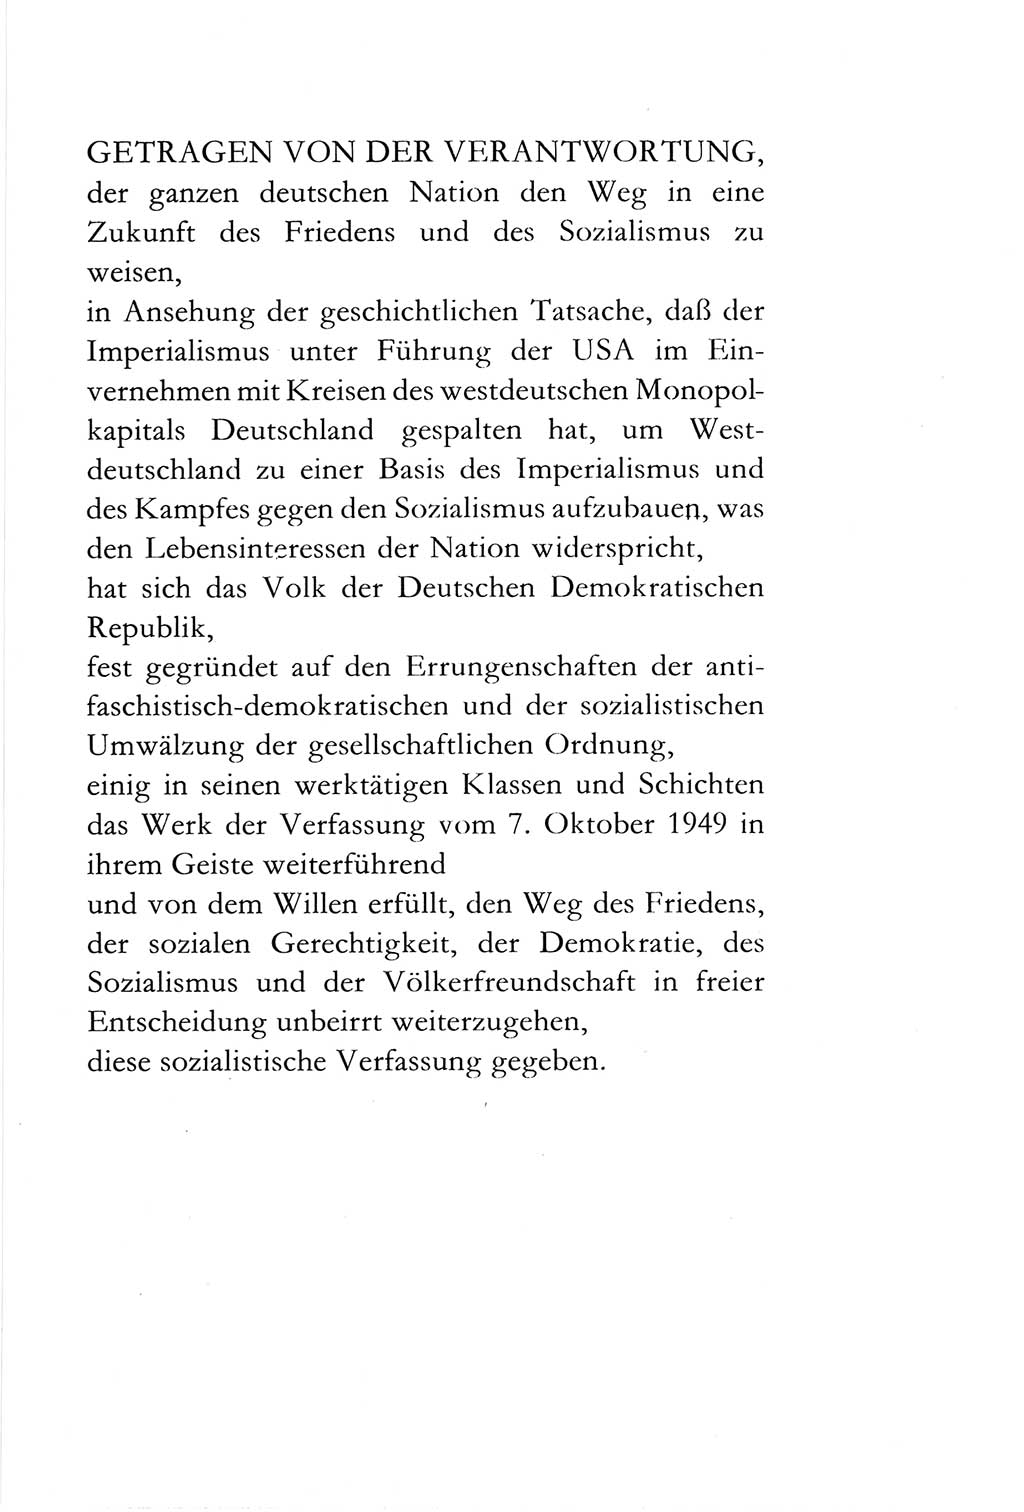 Verfassung der Deutschen Demokratischen Republik (DDR) vom 6. April 1968, Seite 5 (Verf. DDR 1968, S. 5)